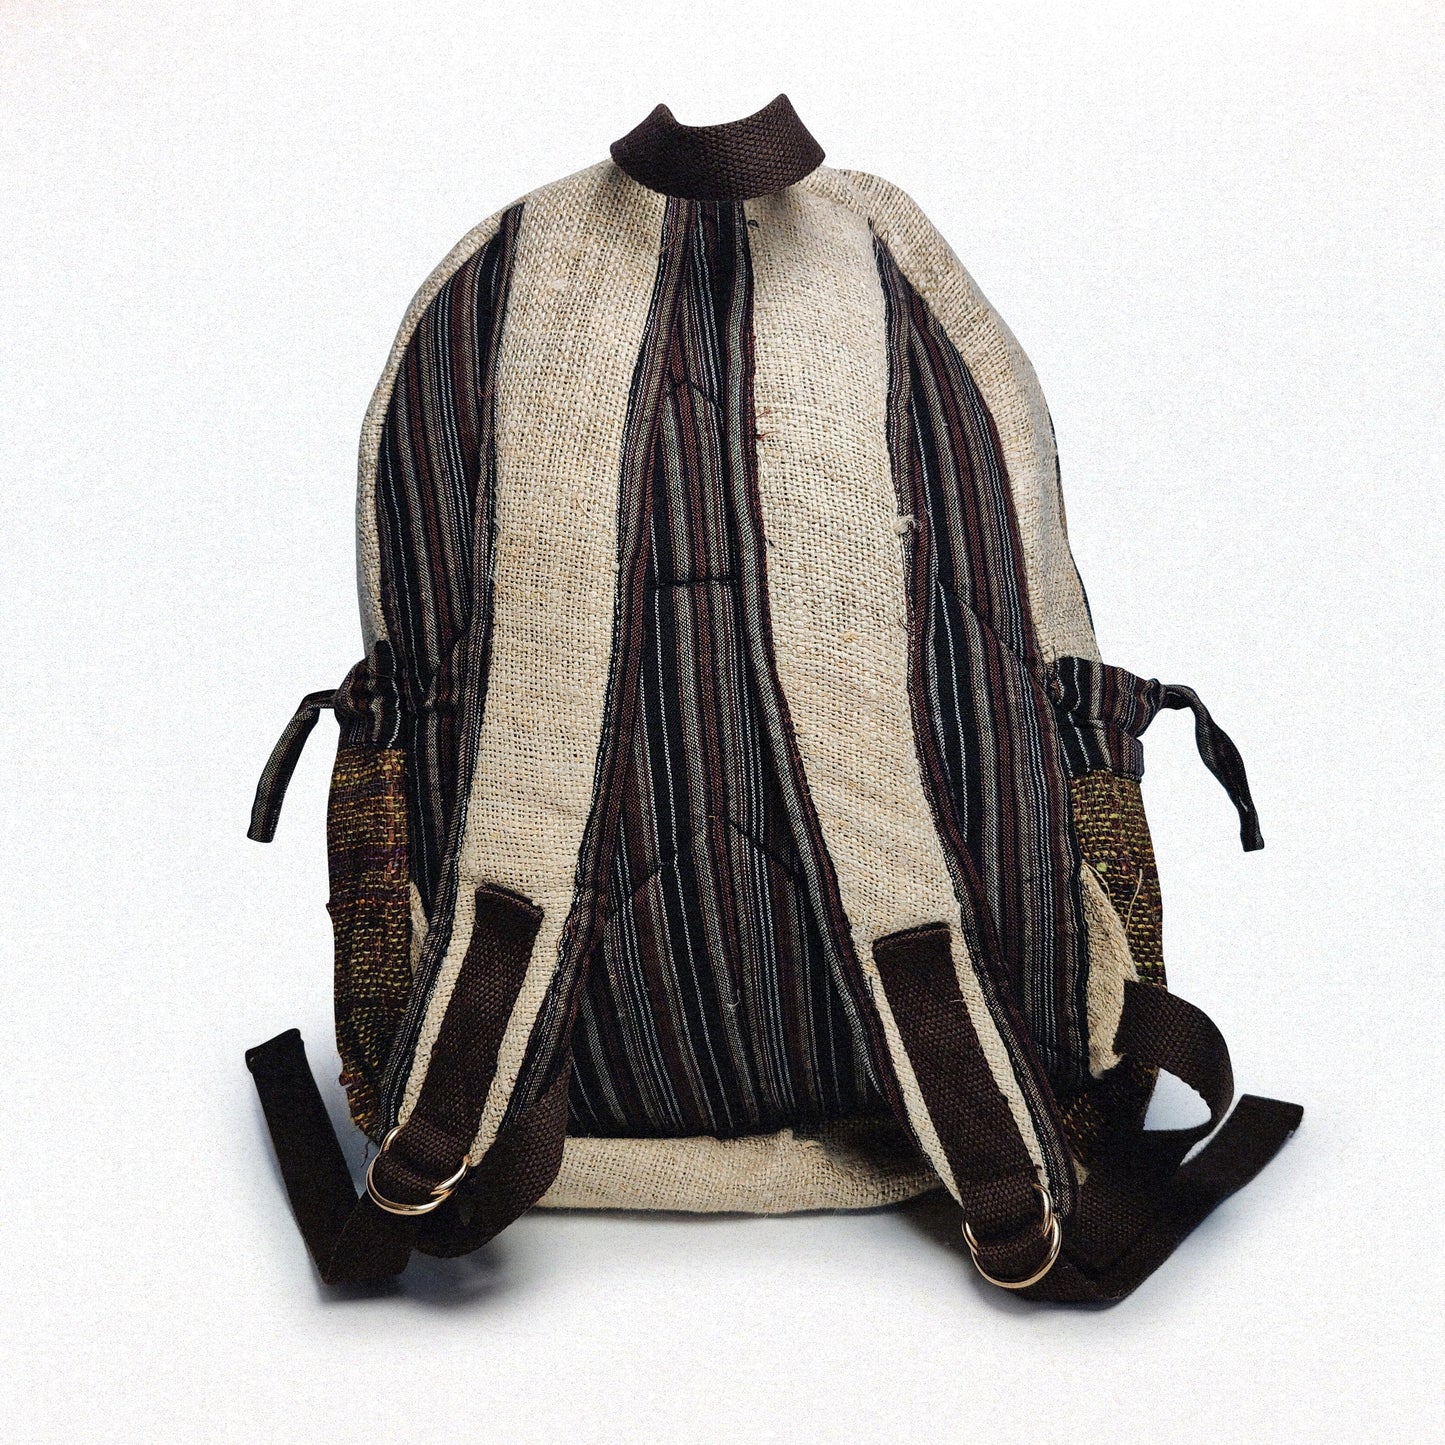 Rupa Nataural Backpack | Organic Hemp and Nettle